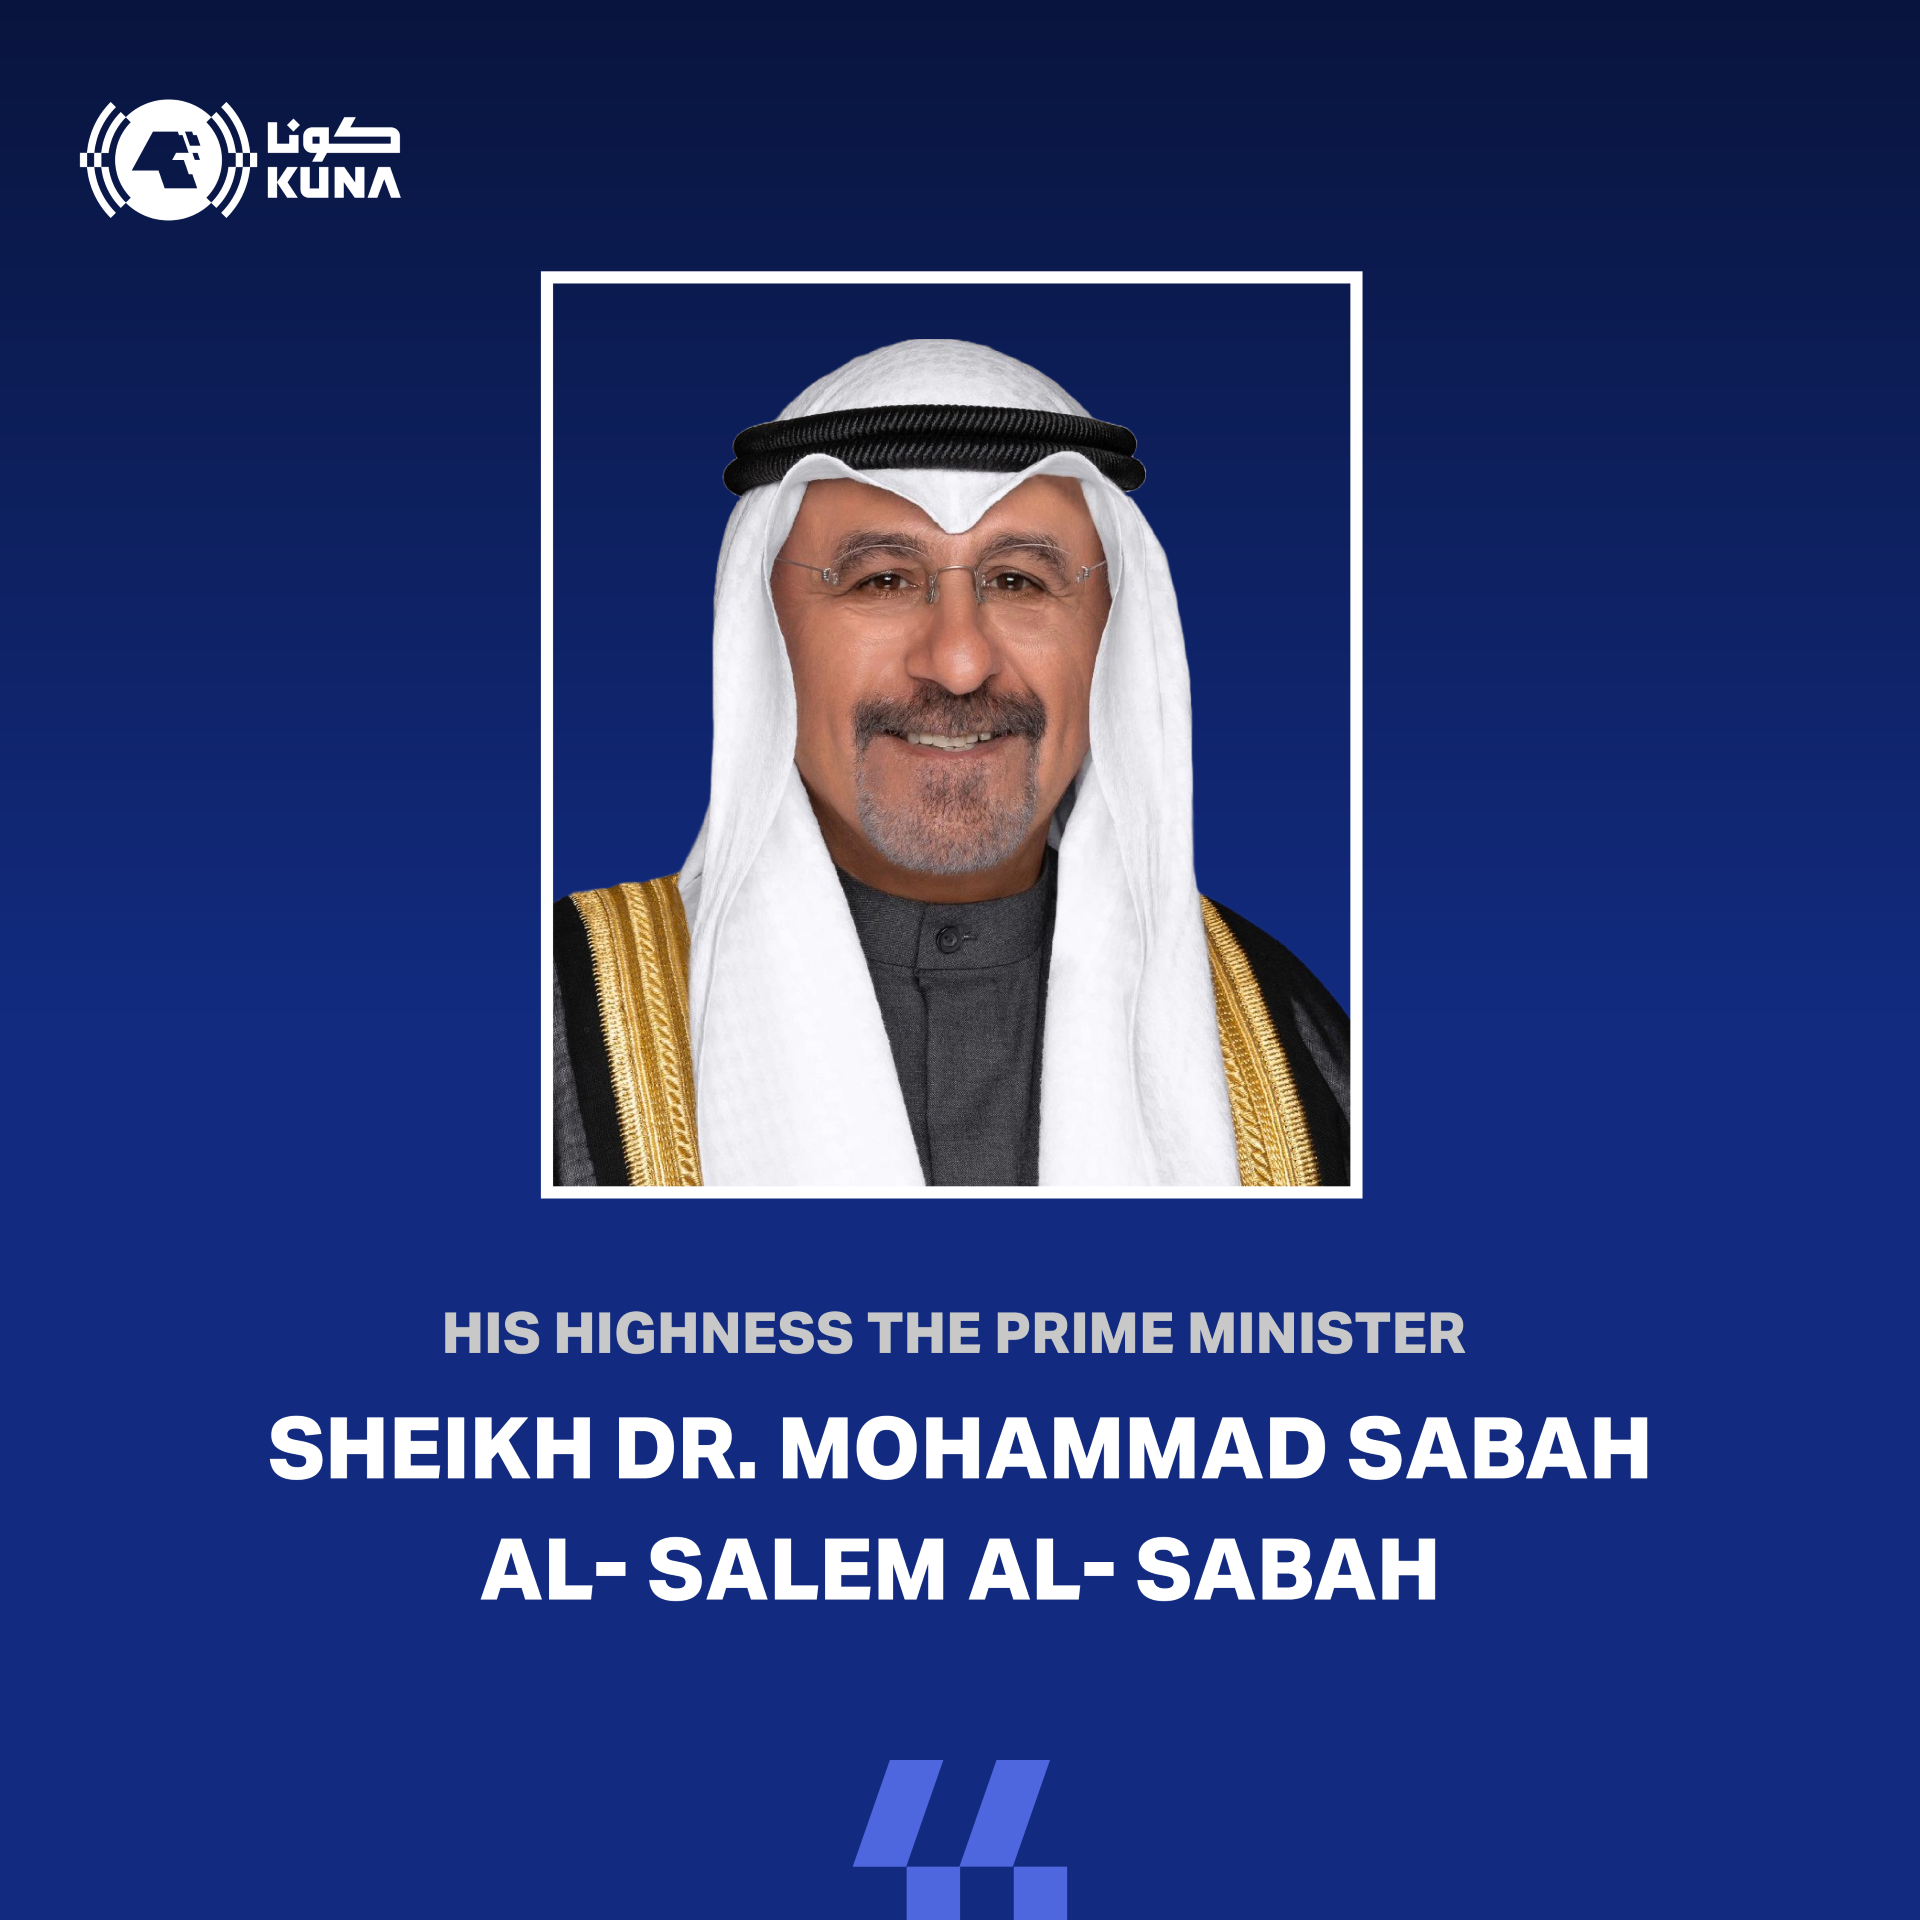 His Highness Sheikh Dr. Mohammad Sabah Al-Salem Al-Sabah